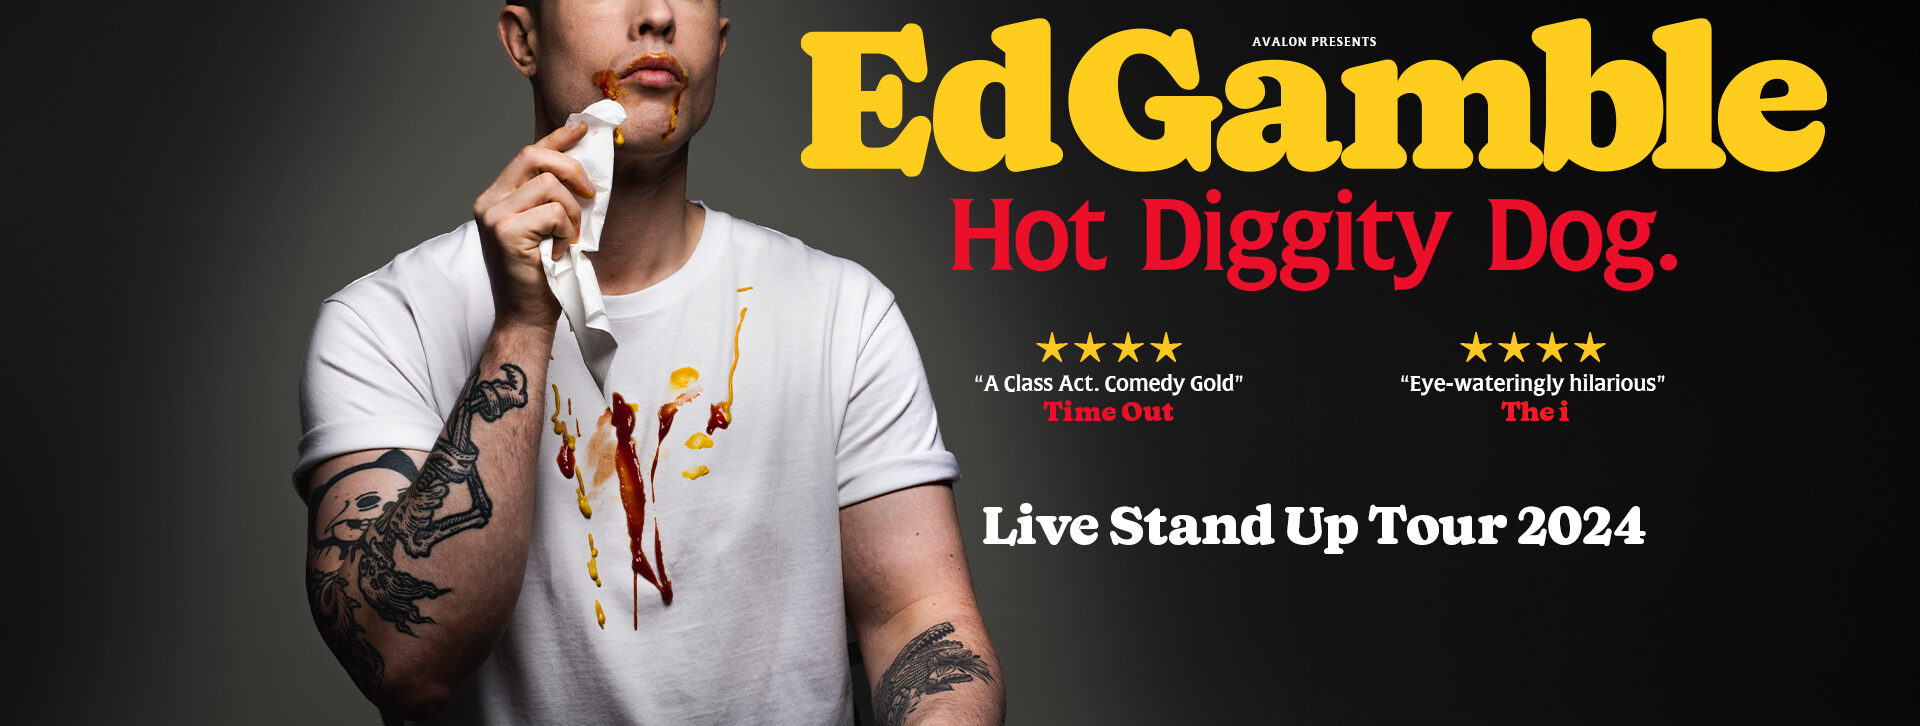 Ed Gamble: Hot Diggity Dog